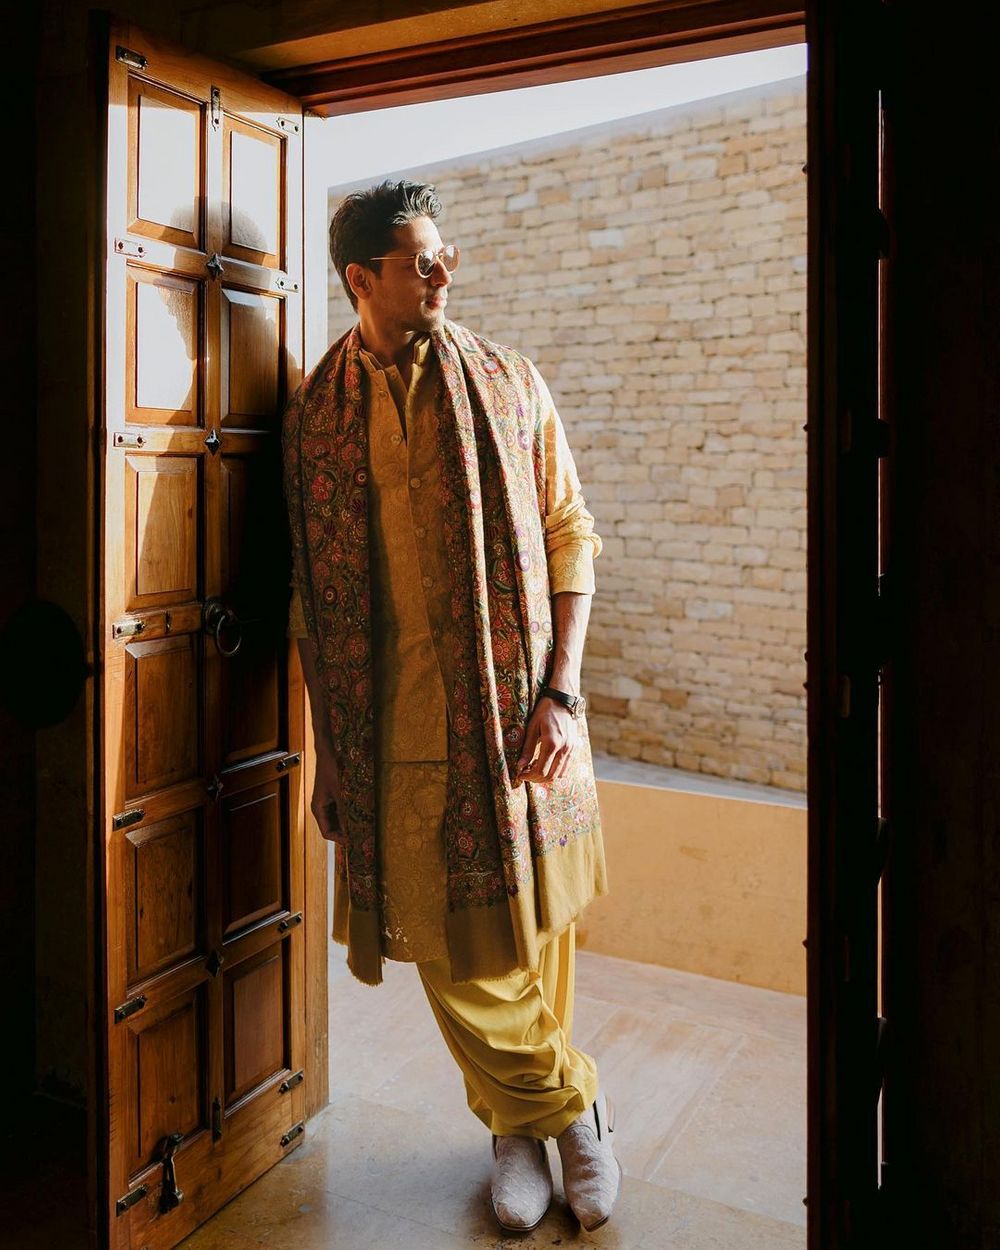 Photo of siddharth malhotra in manish malhotra groomwear for his mehendi with a shawl